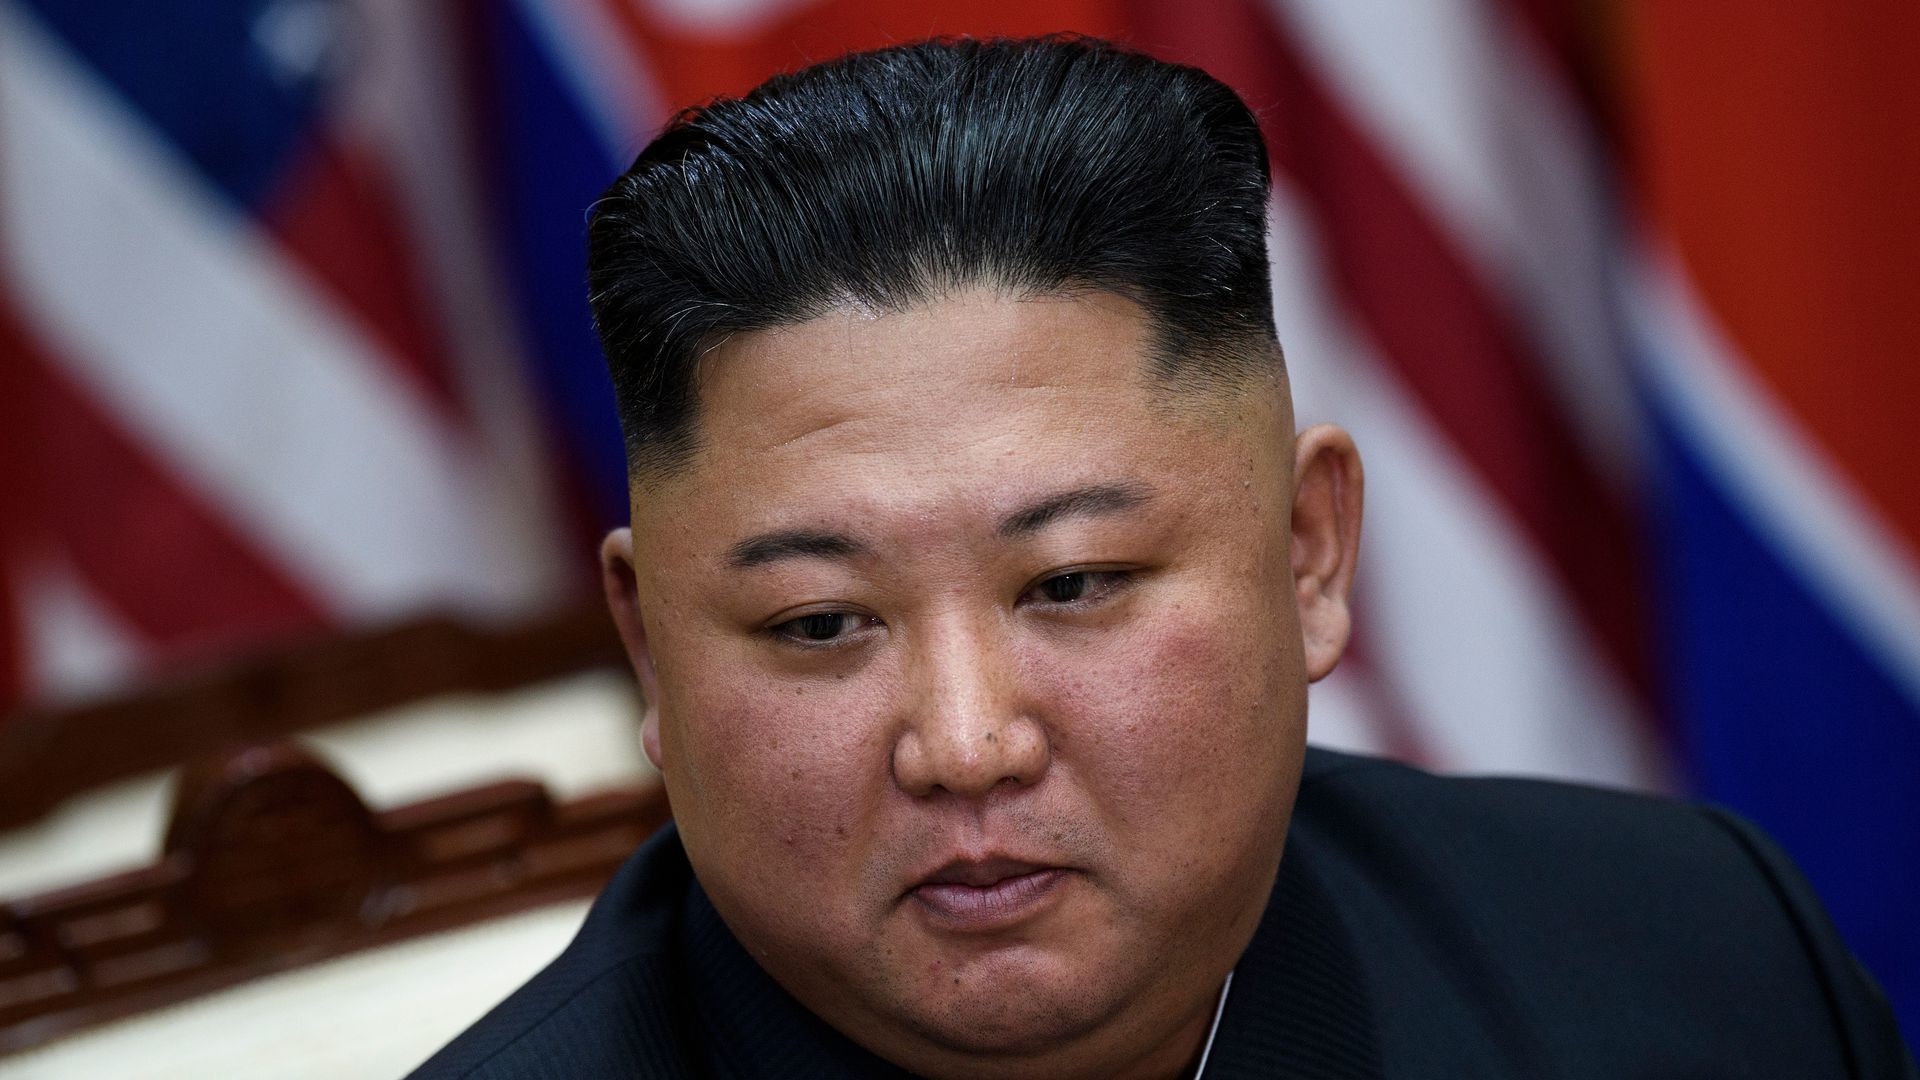 Triều Tiên bác tin Kim Jong Un gửi thư cho ông Trump